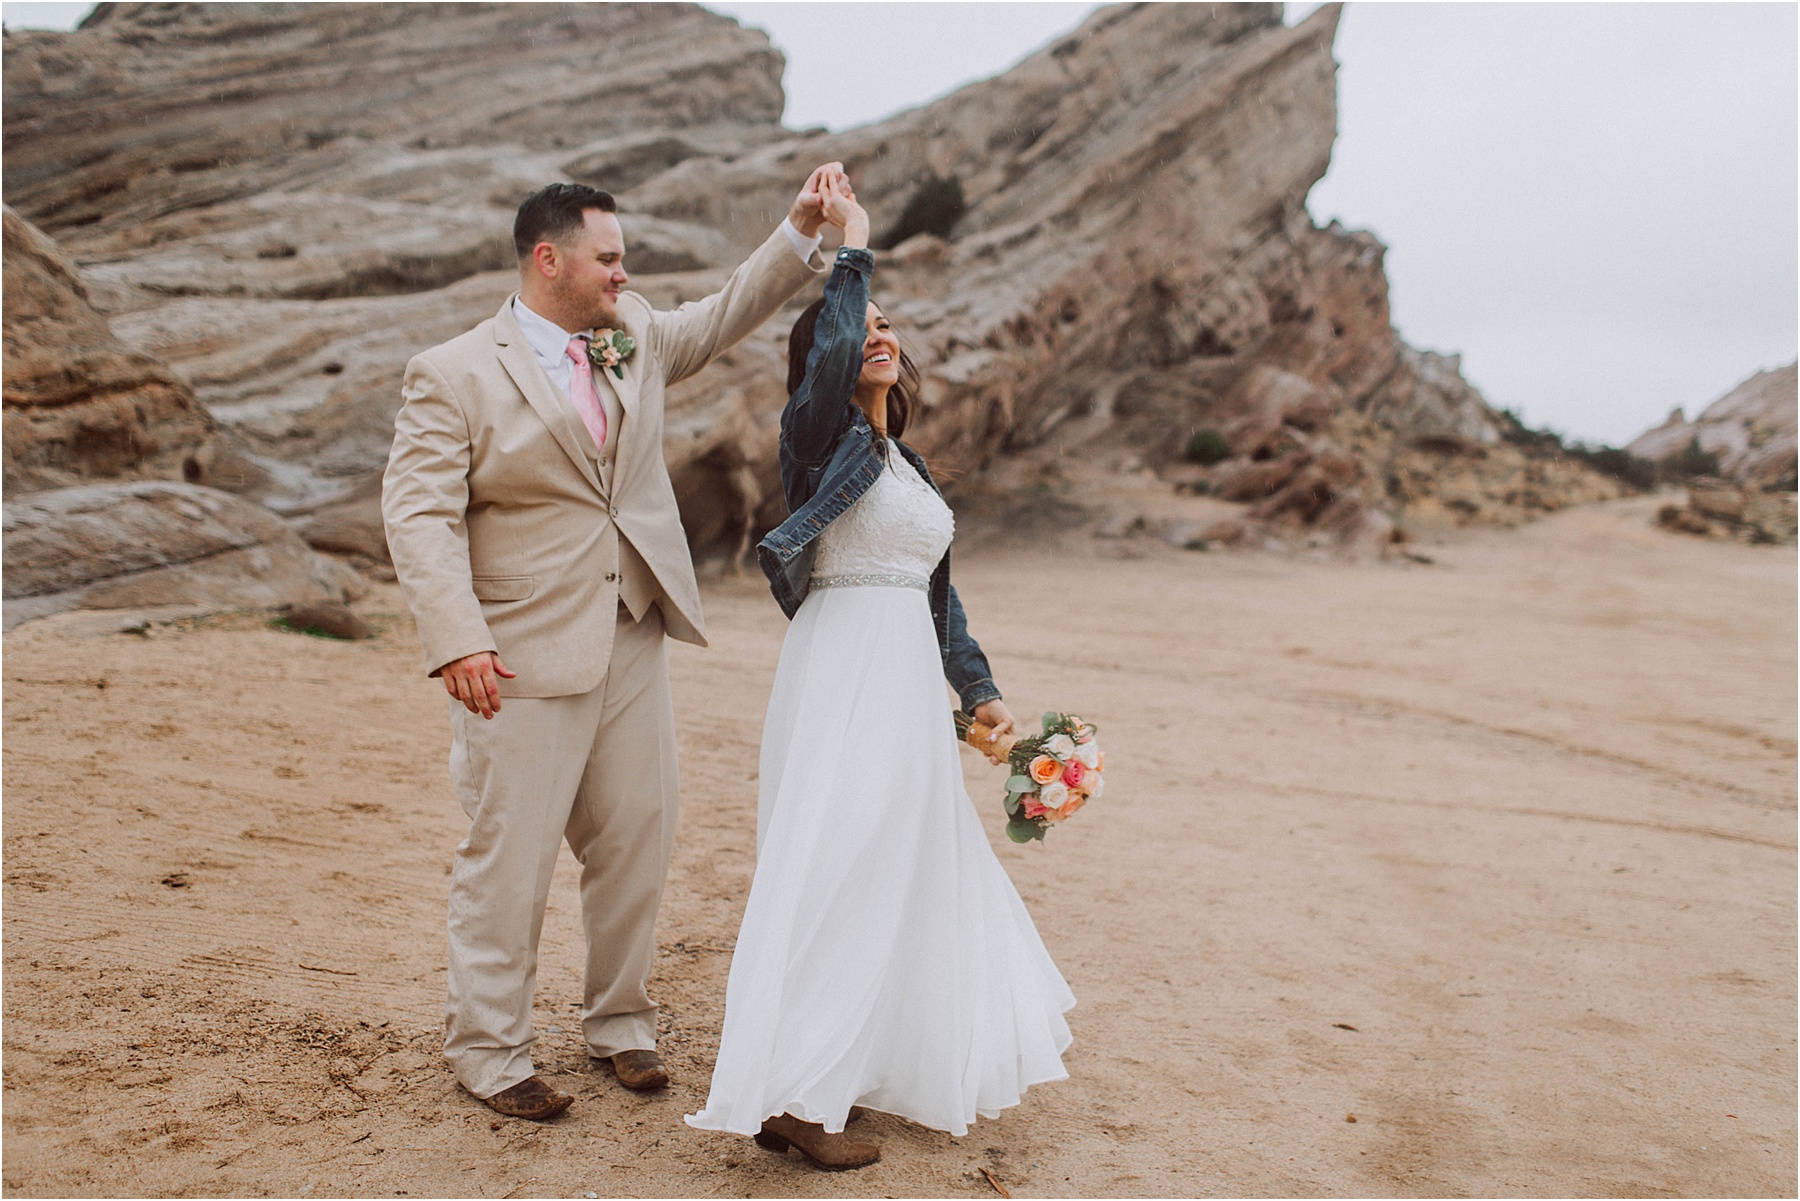 Vasquez Rocks Intimate Wedding & Elopement Photography - Bride & Groom Portraits dancing in the rain